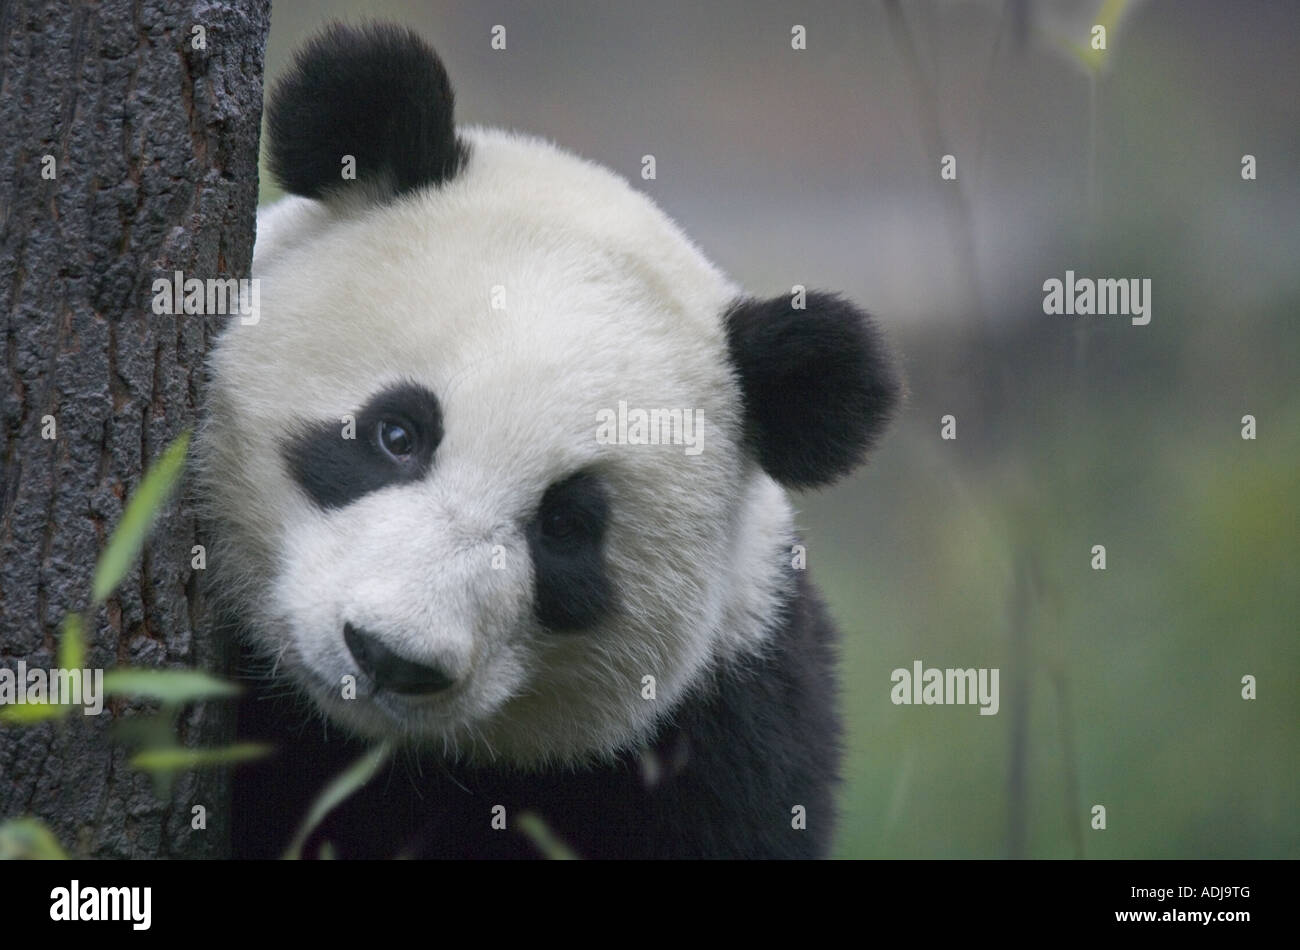 Panda géant de Wolong Sichuan Chine arbre derrière Banque D'Images